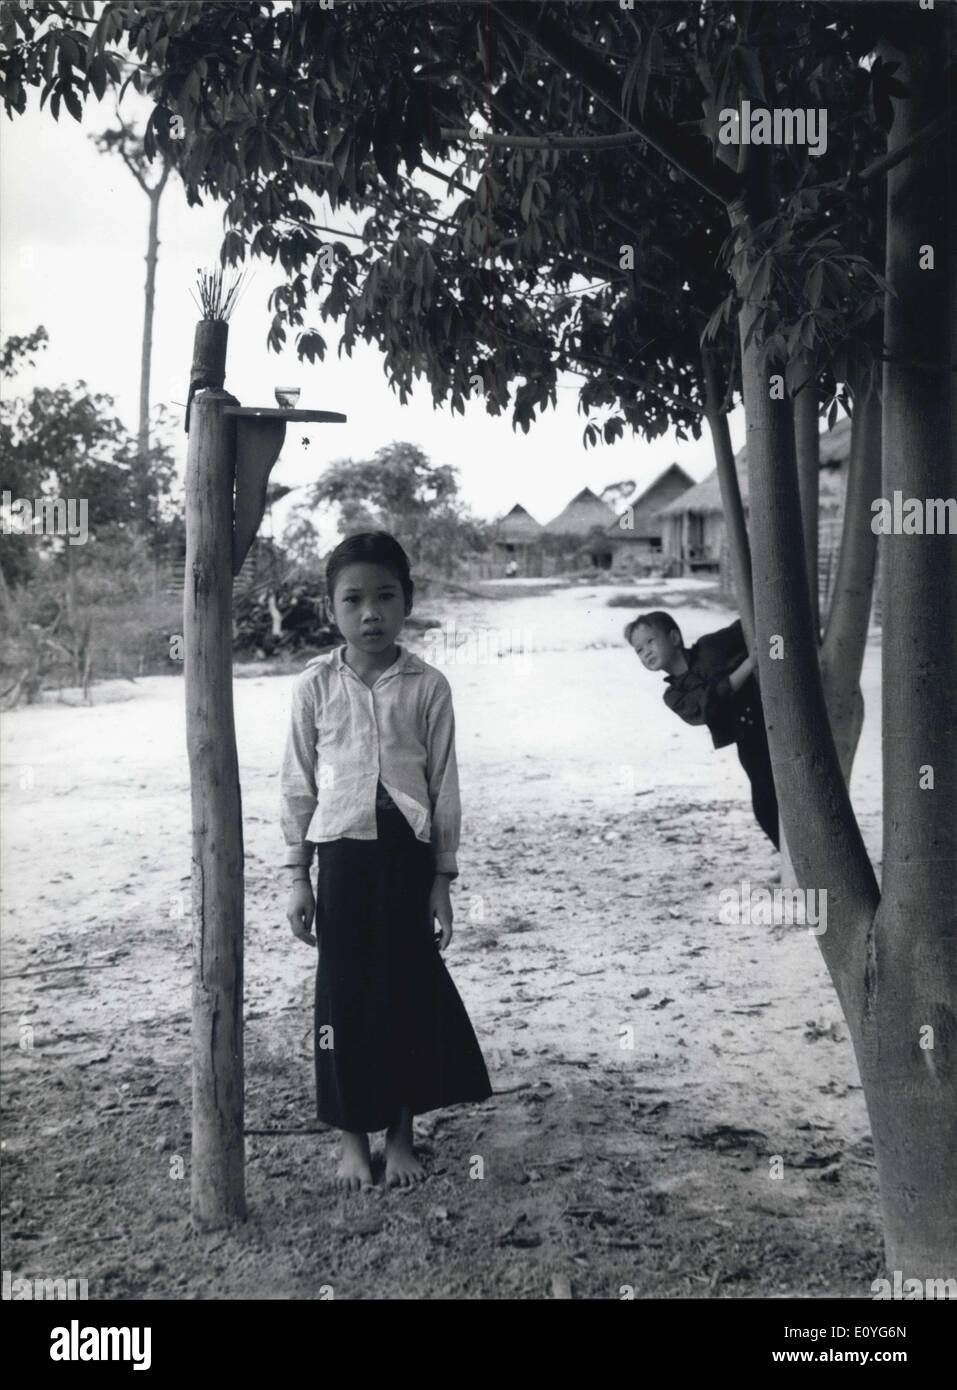 1 janvier, 1970 - un petit garçon au Laos, habillé en partie en costume national. Banque D'Images